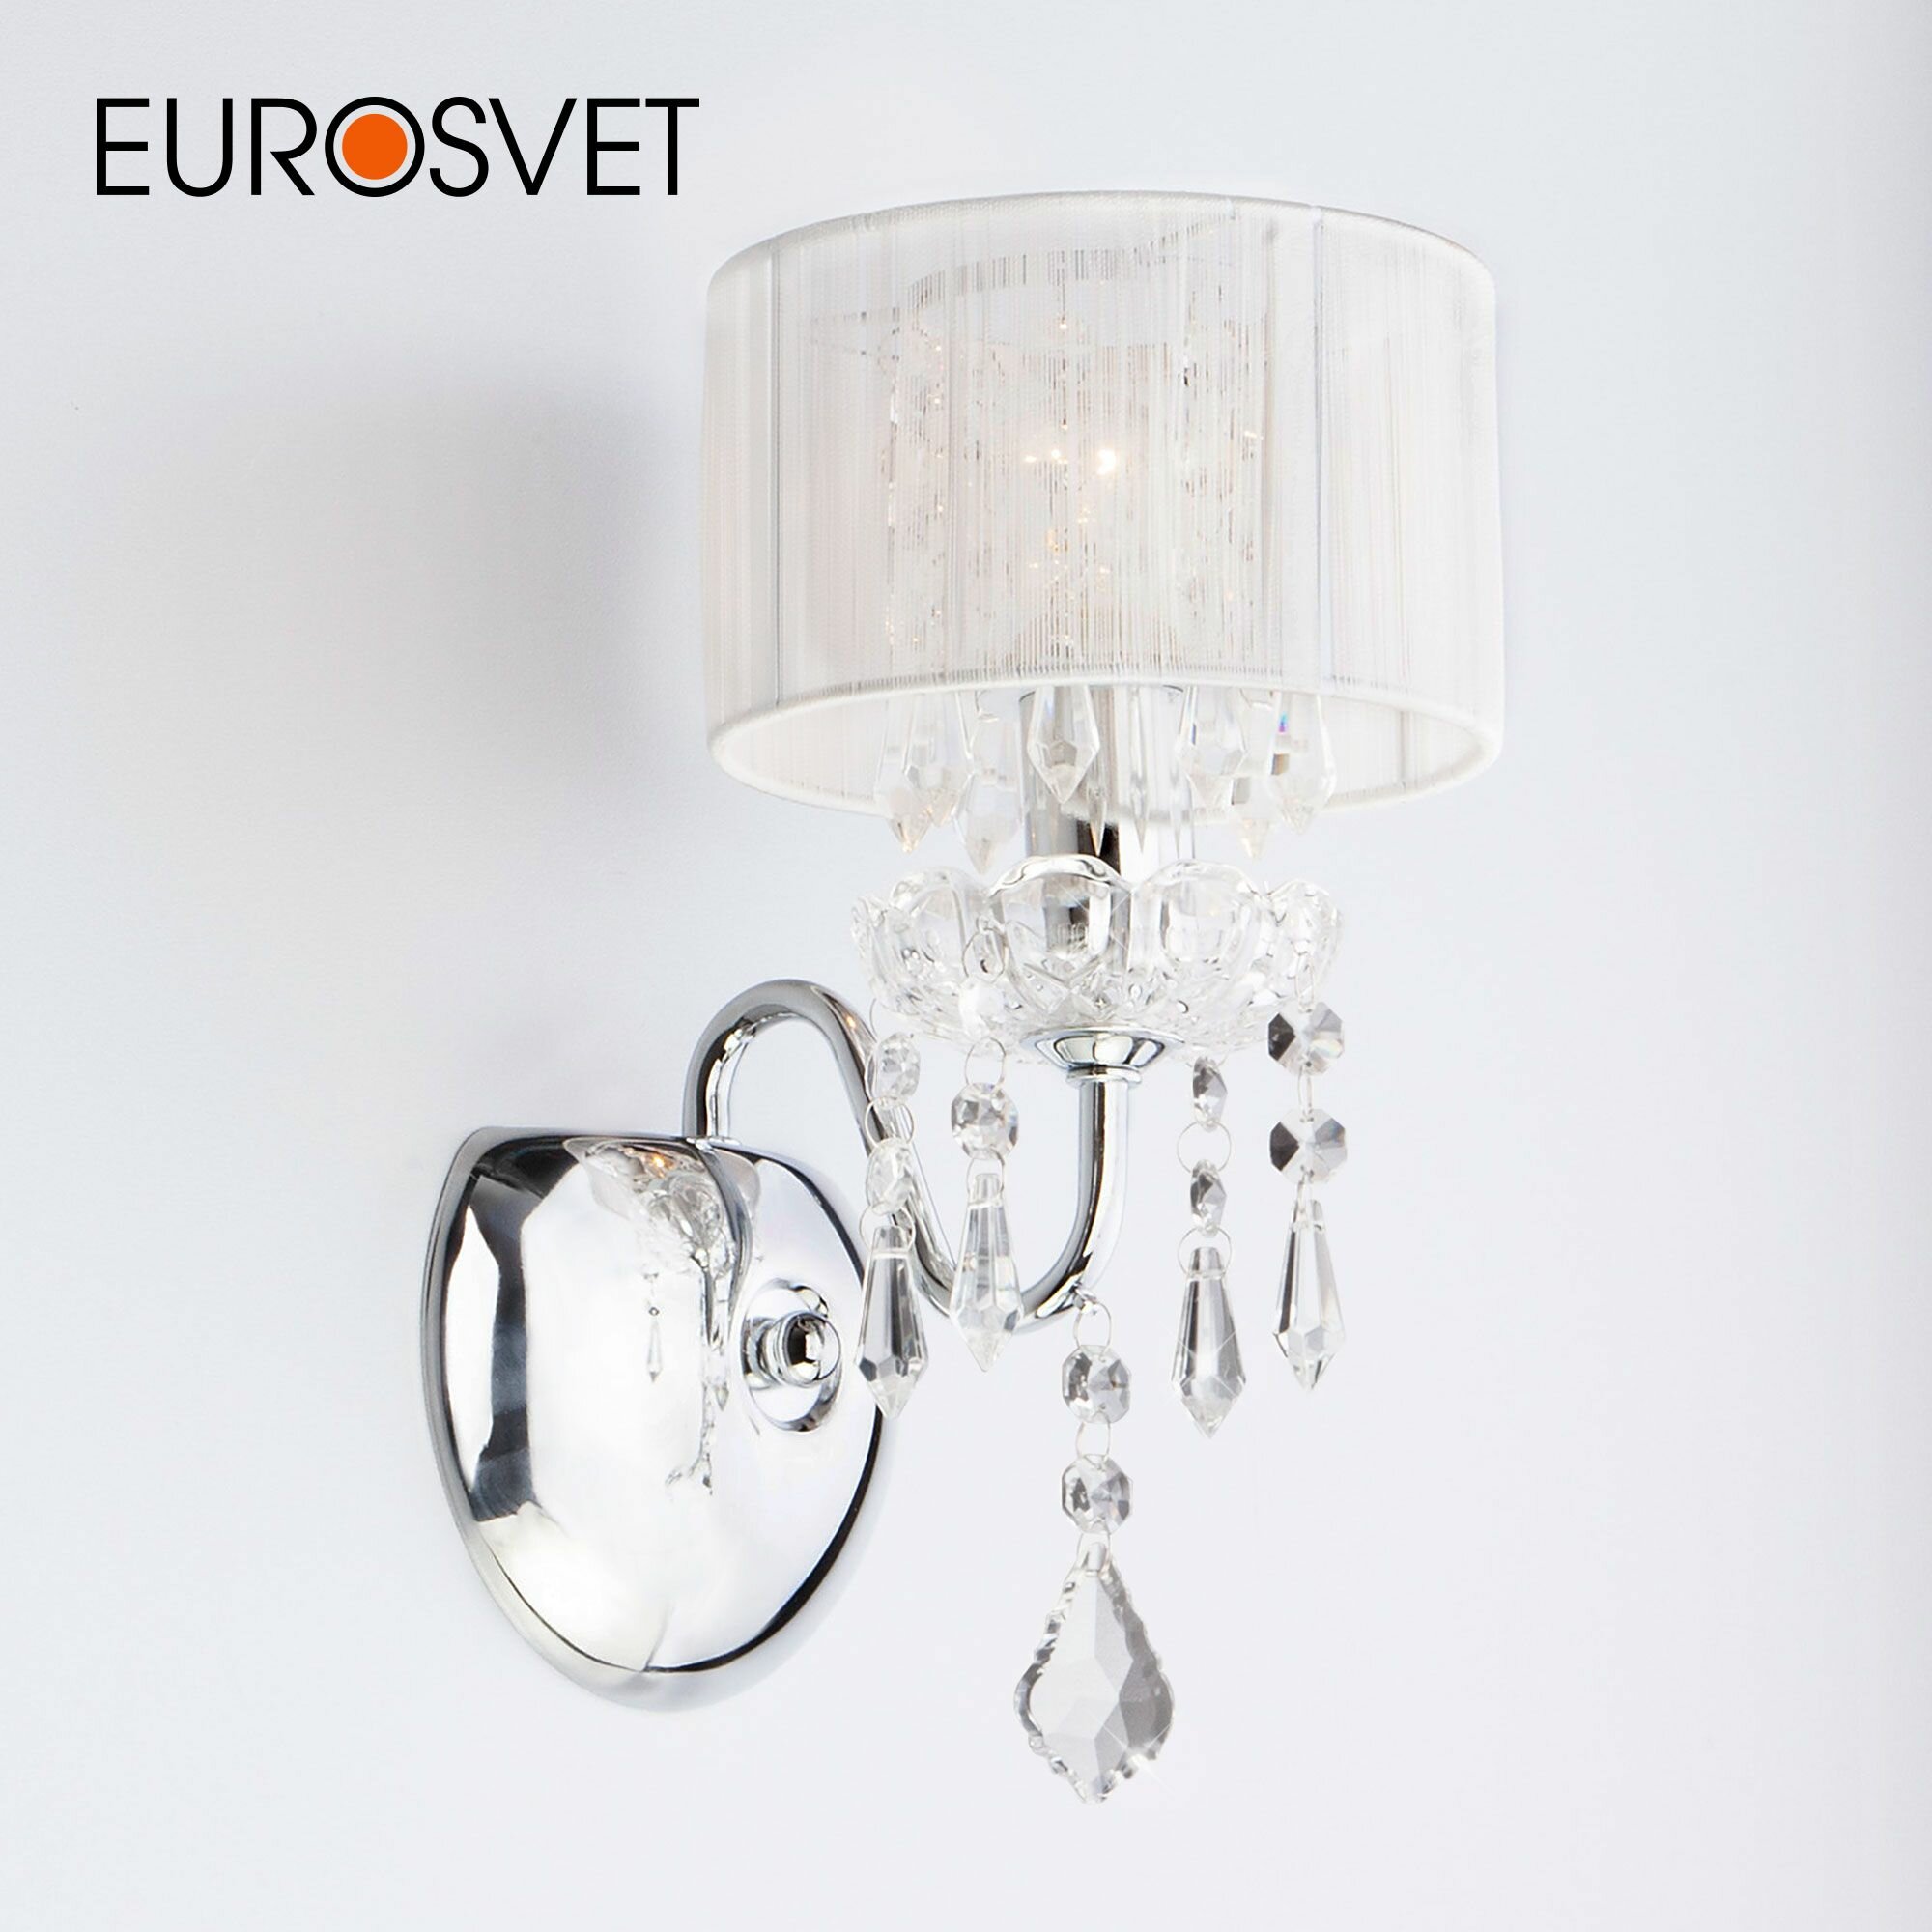 Бра / Настенный светильник с абажуром и хрусталем Eurosvet 2045/1 хром/белый